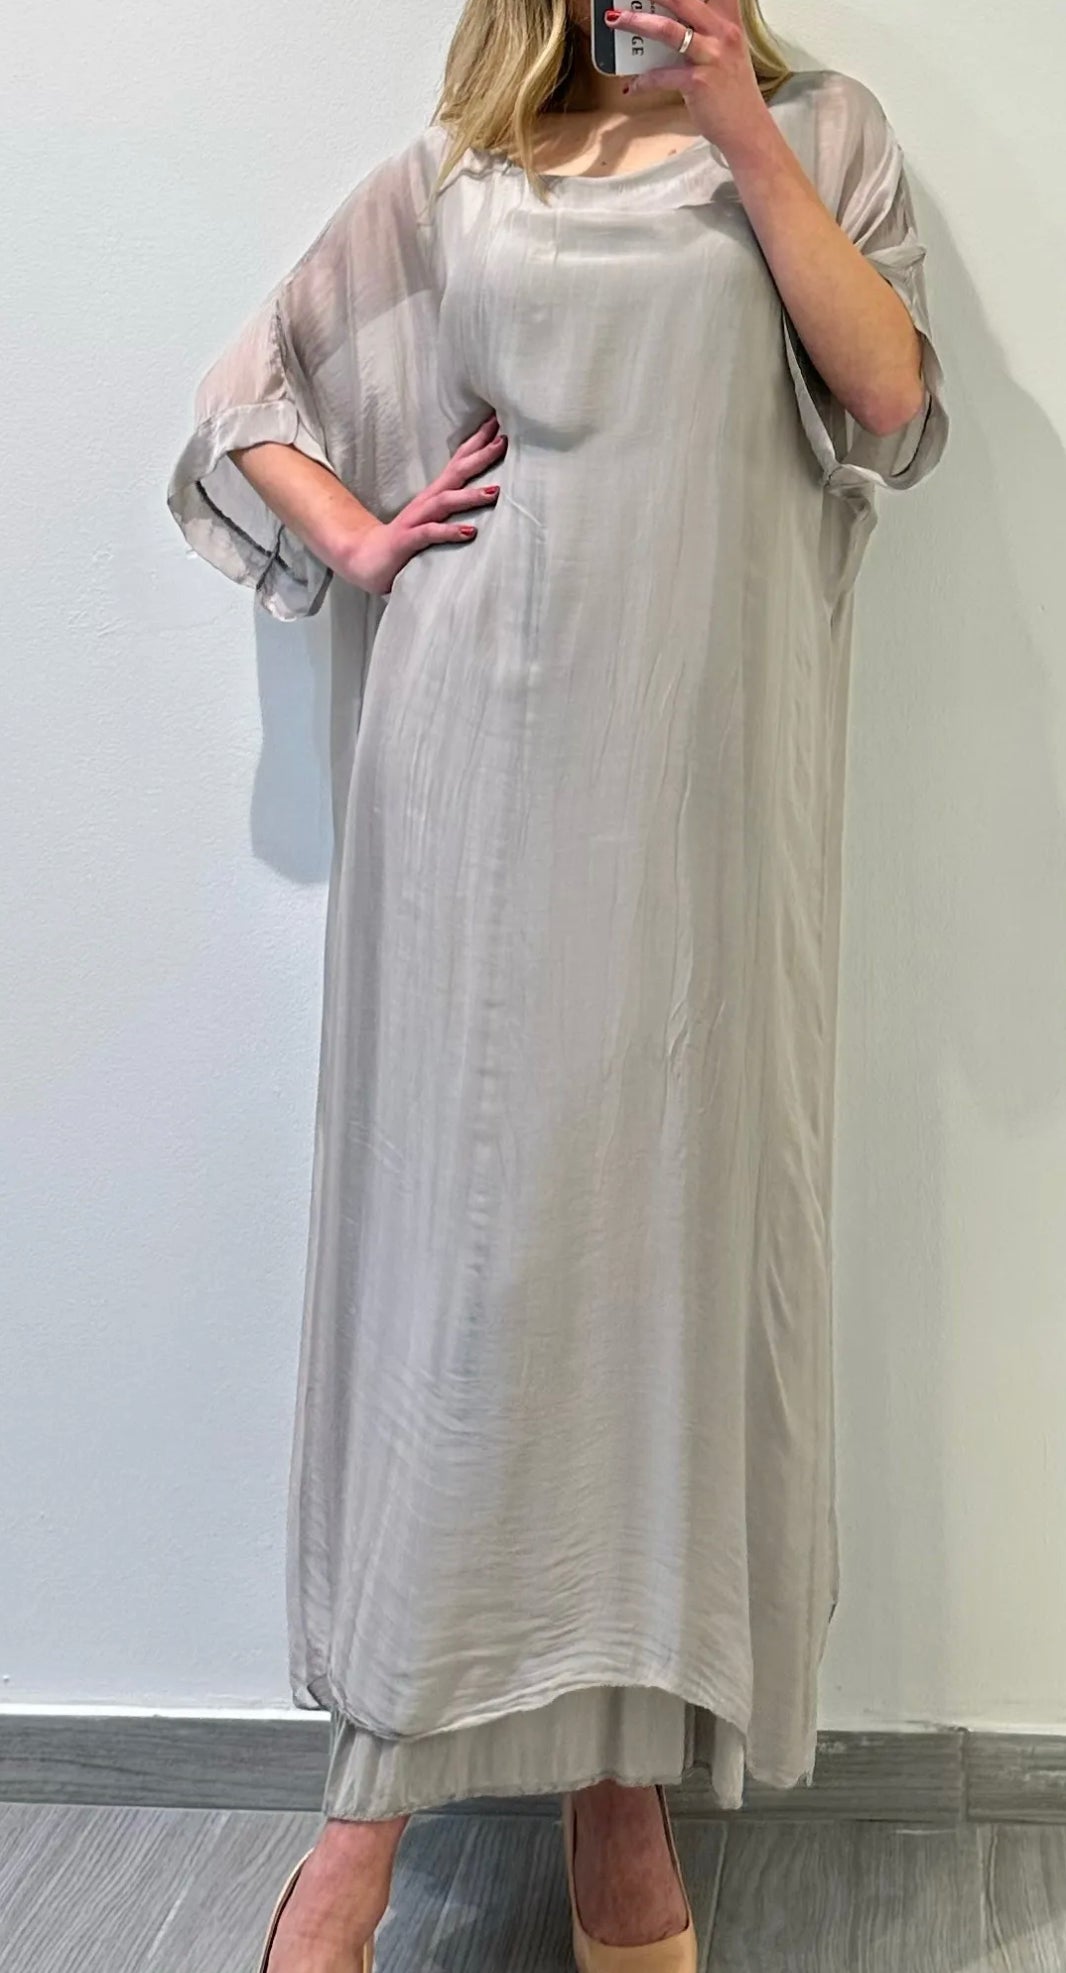 EL- 9939 Robe / Dress